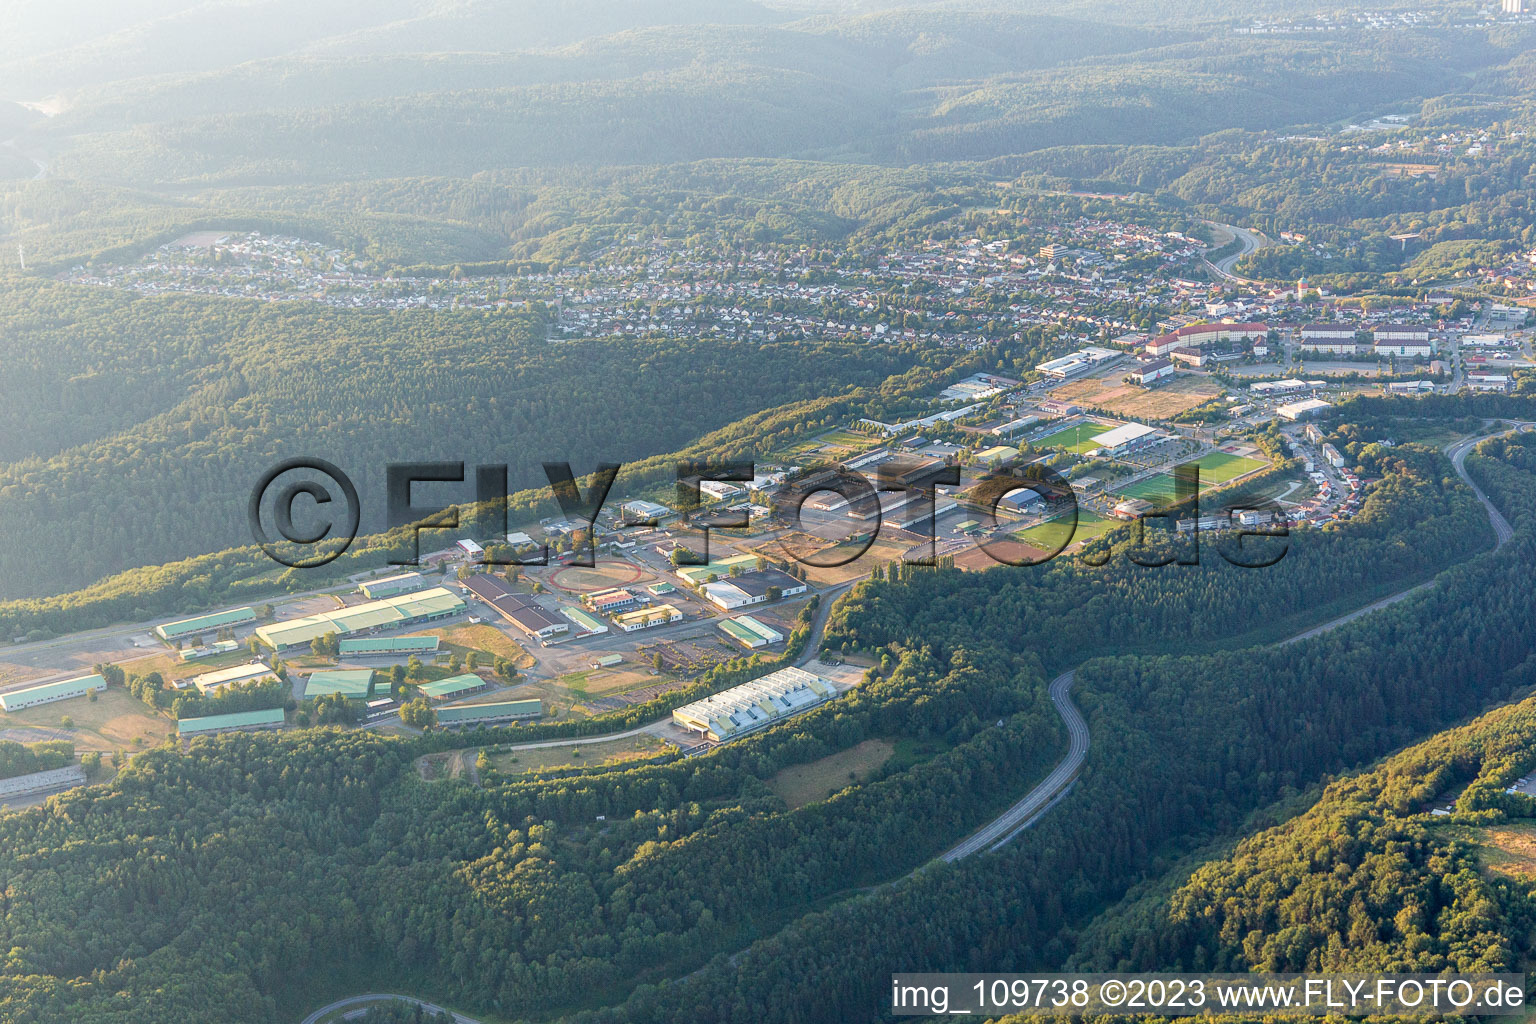 Vue aérienne de Forces armées à Pirmasens dans le département Rhénanie-Palatinat, Allemagne